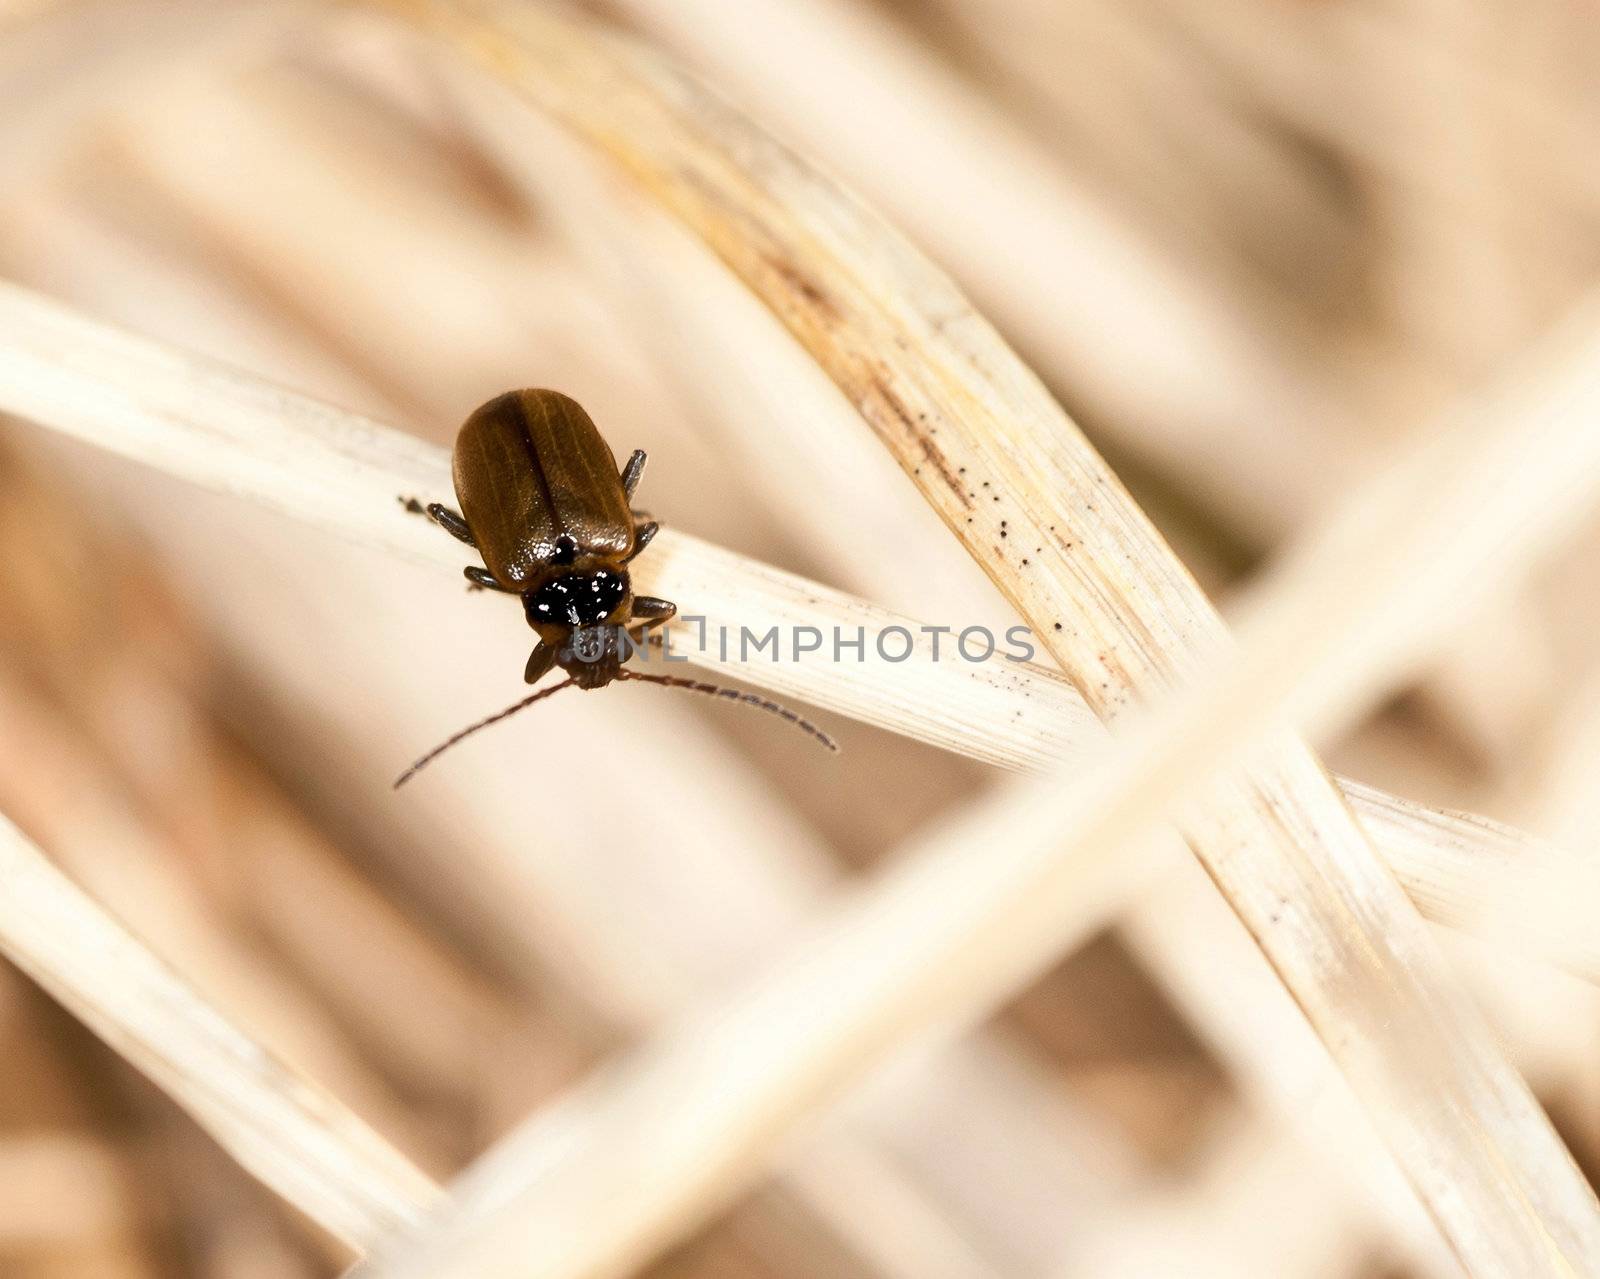 Little single beetle on a straw